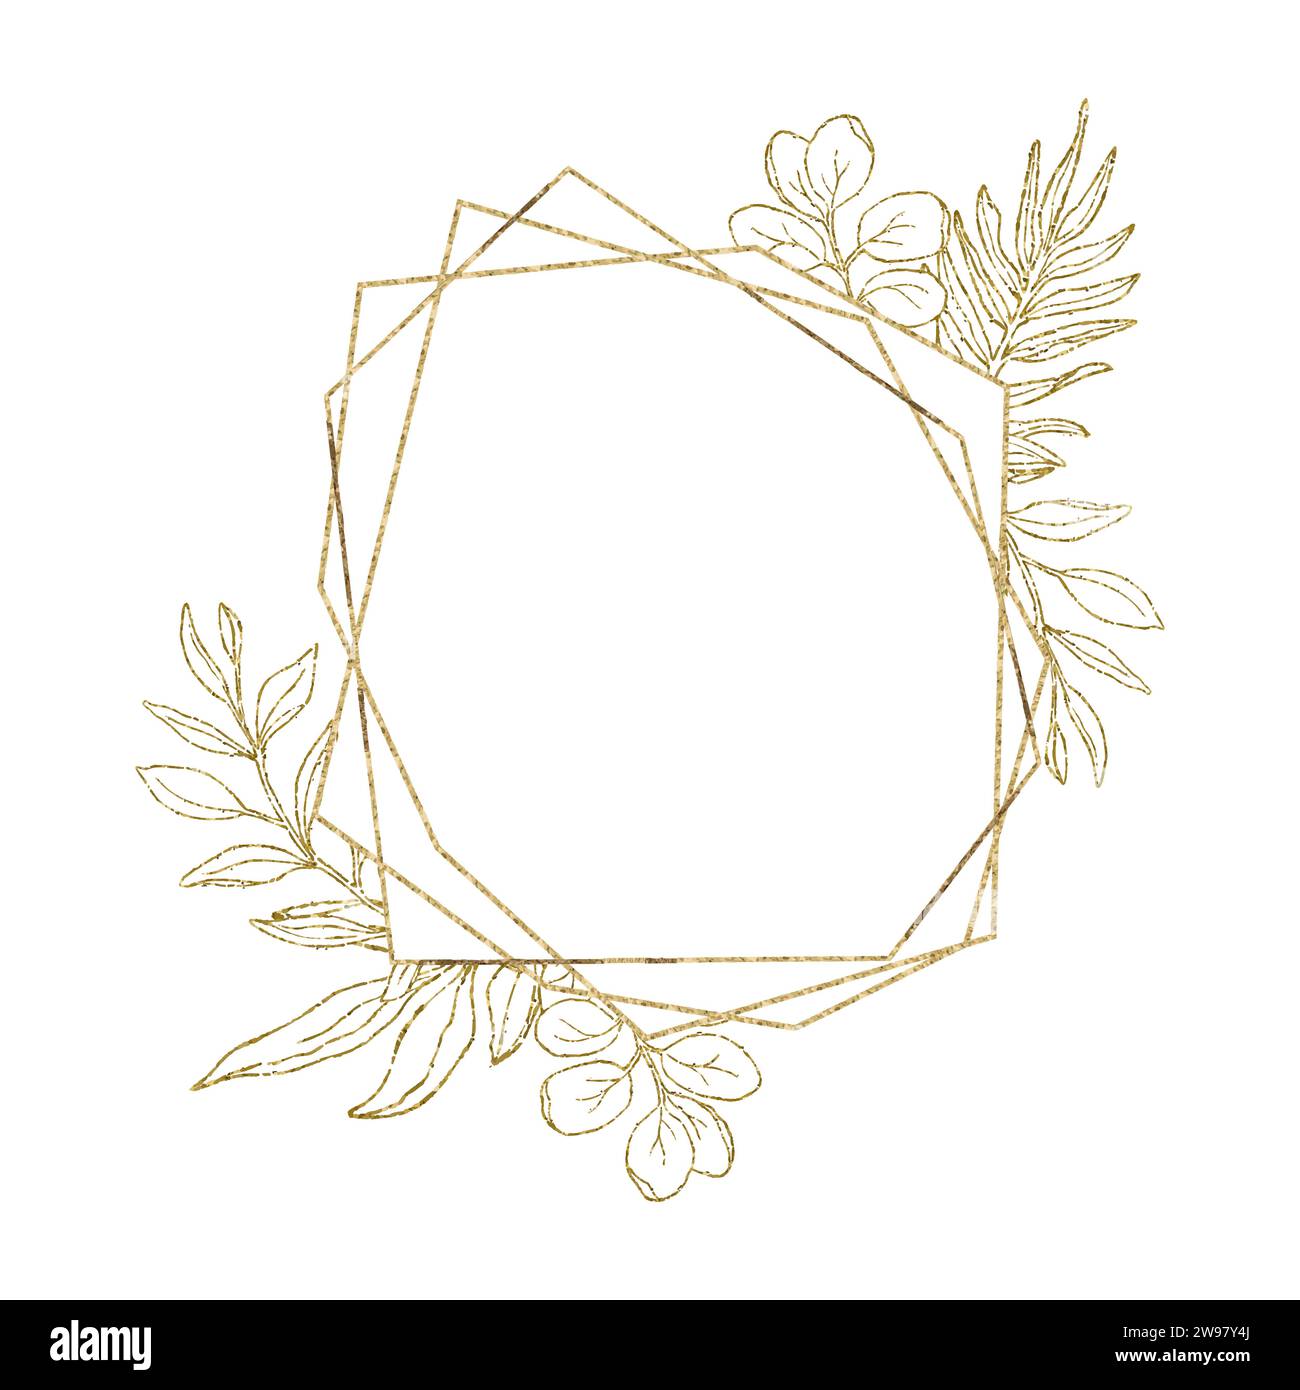 Eucalyptus line art, gold glitter geometry leaves frame for card or invitation, vector illustration, isolate on white background. Stock Vector